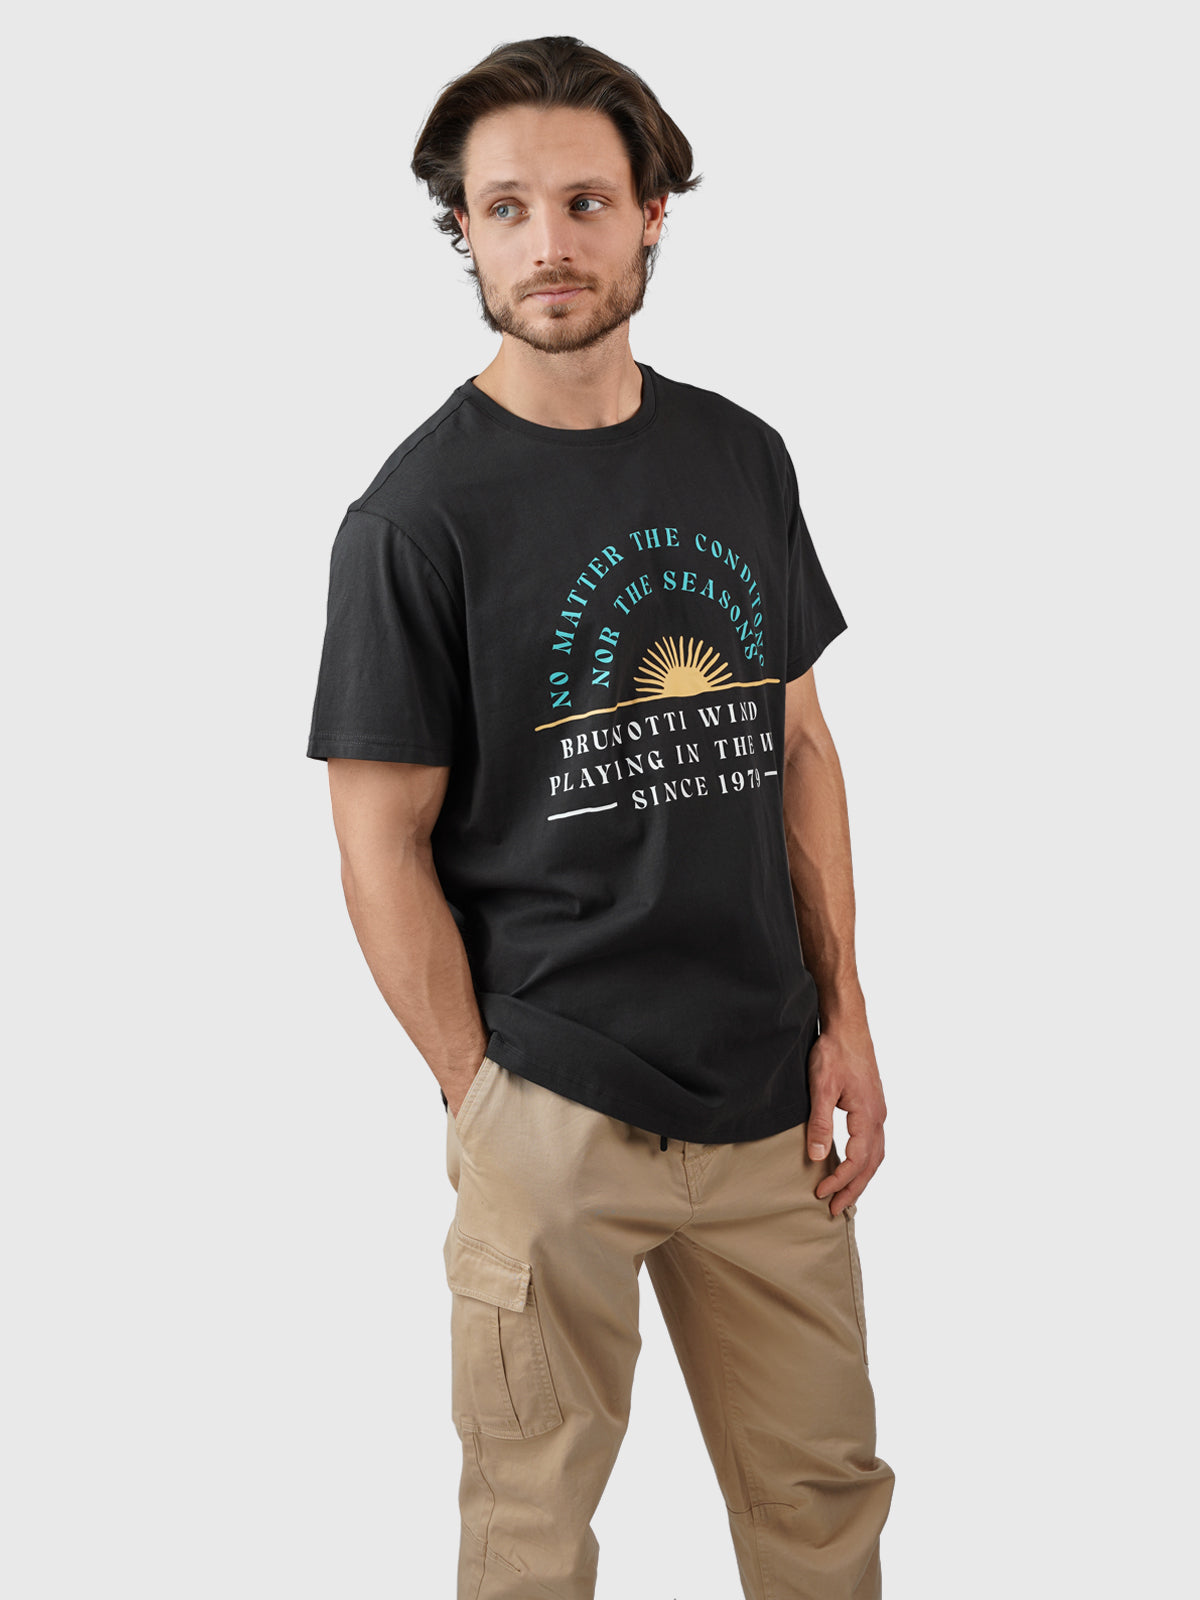 Leeway Herren T-shirt | Schwarz